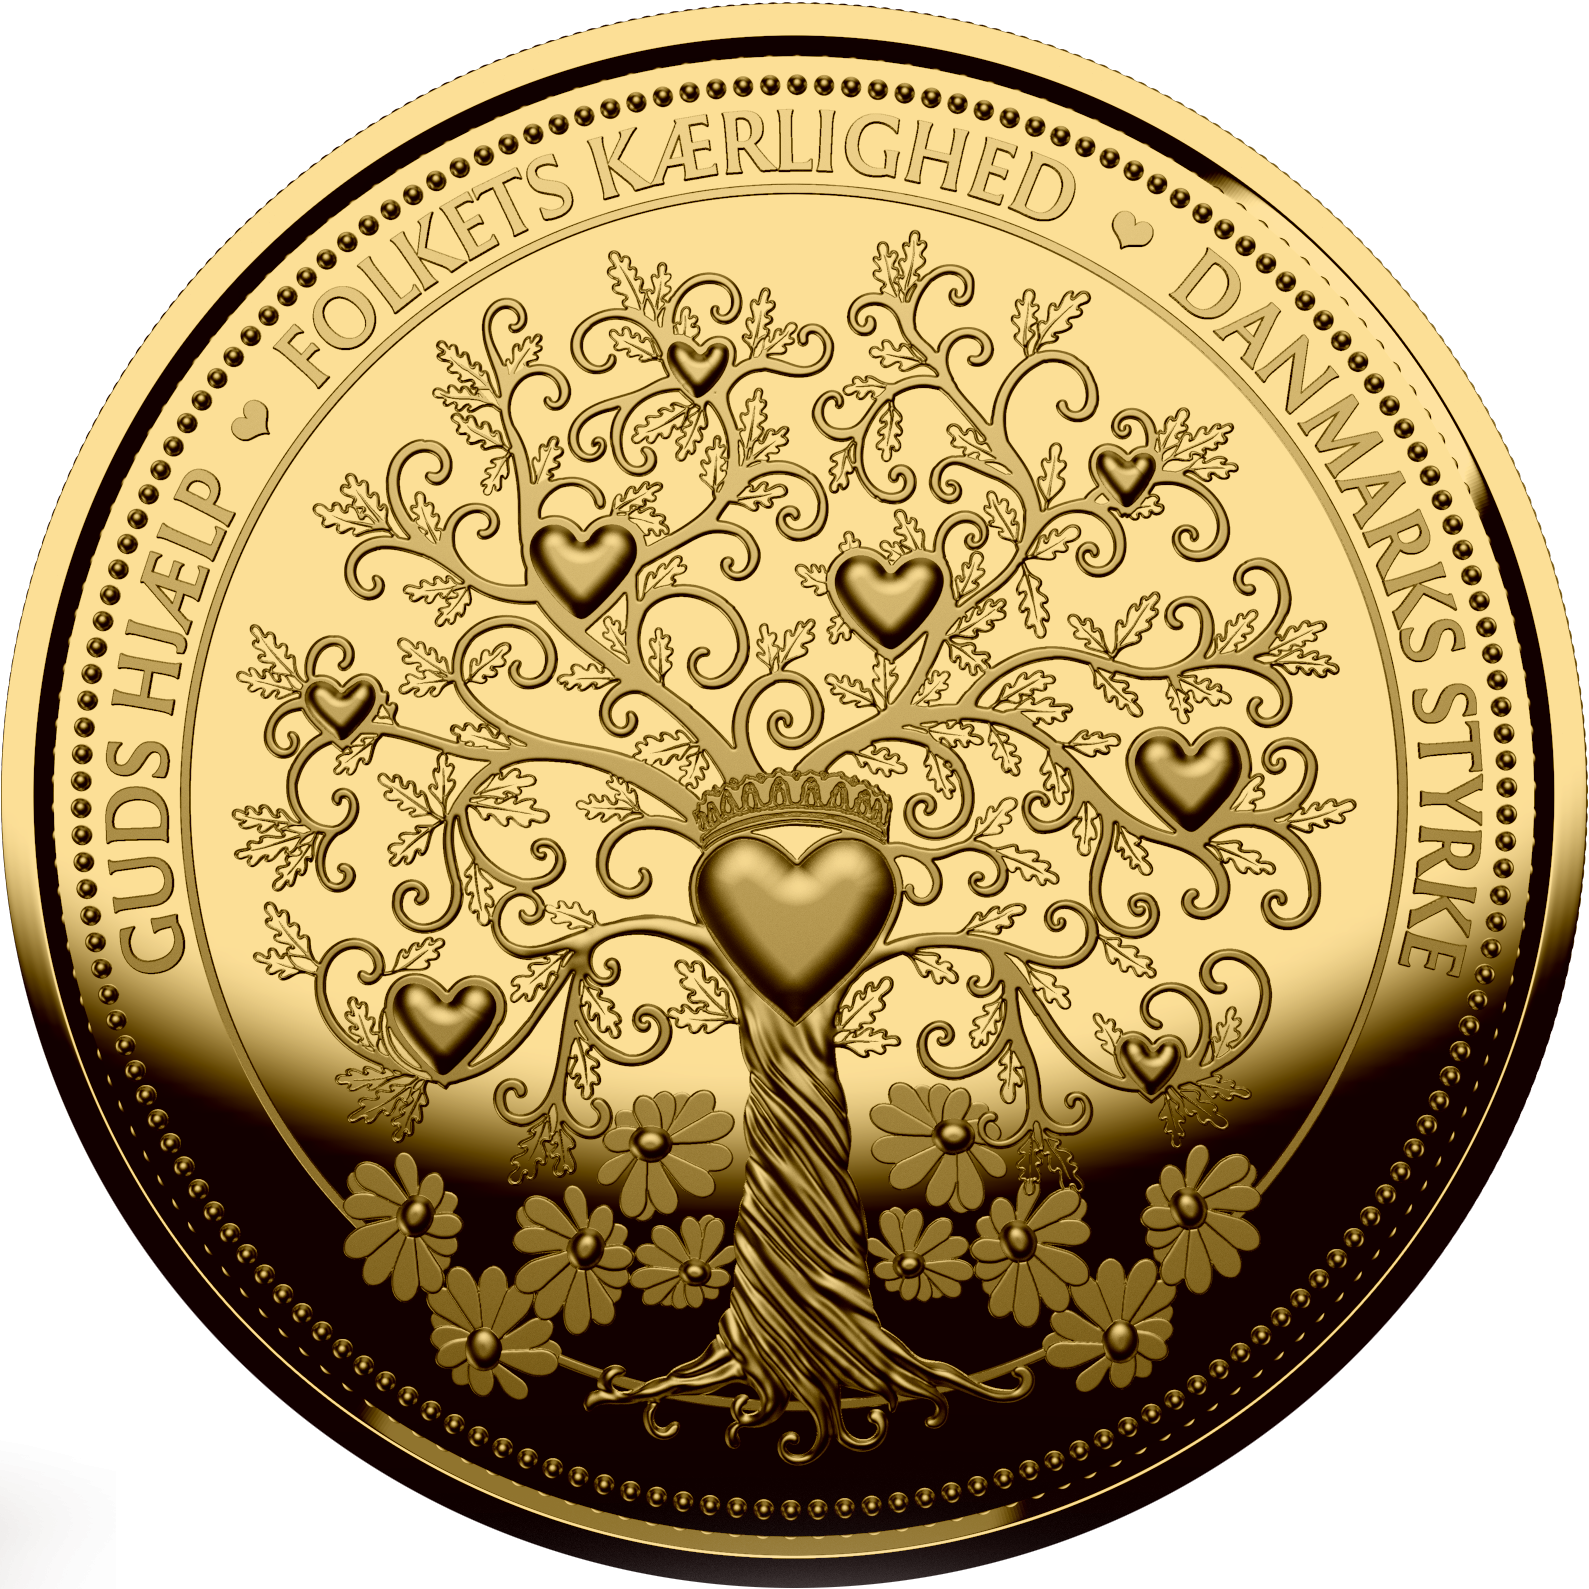   I forbindelse med Dronning Margrethes 50-års regentjubilæum, udgiver vi denne fine forgyldte jubilæumsmønt med Fairmined guld. 